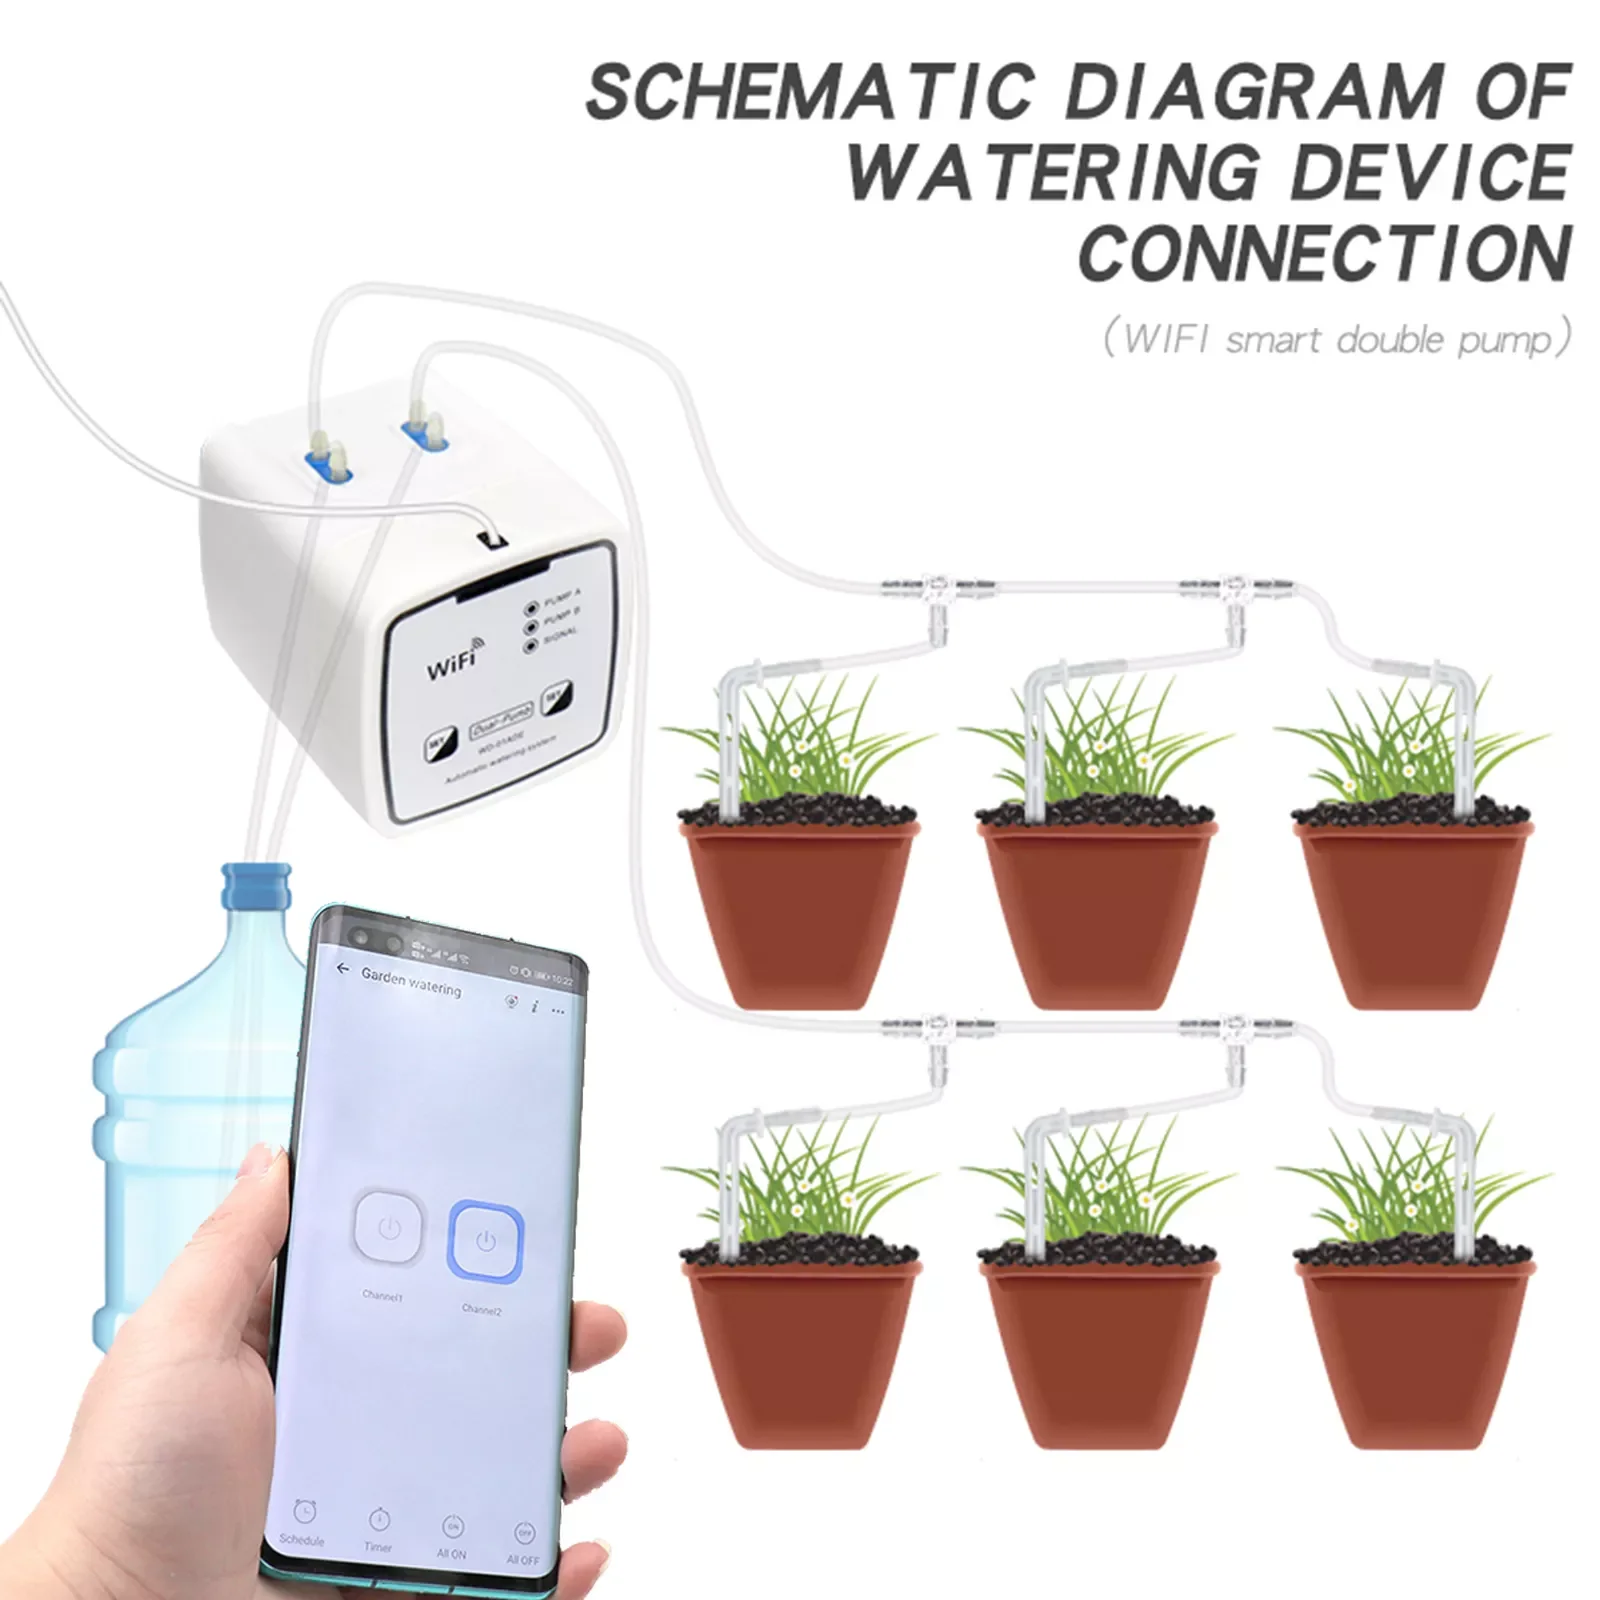 

Устройство для полива сада с двойным насосом, умное автоматическое устройство для капельного орошения, Wi-Fi управление через приложение